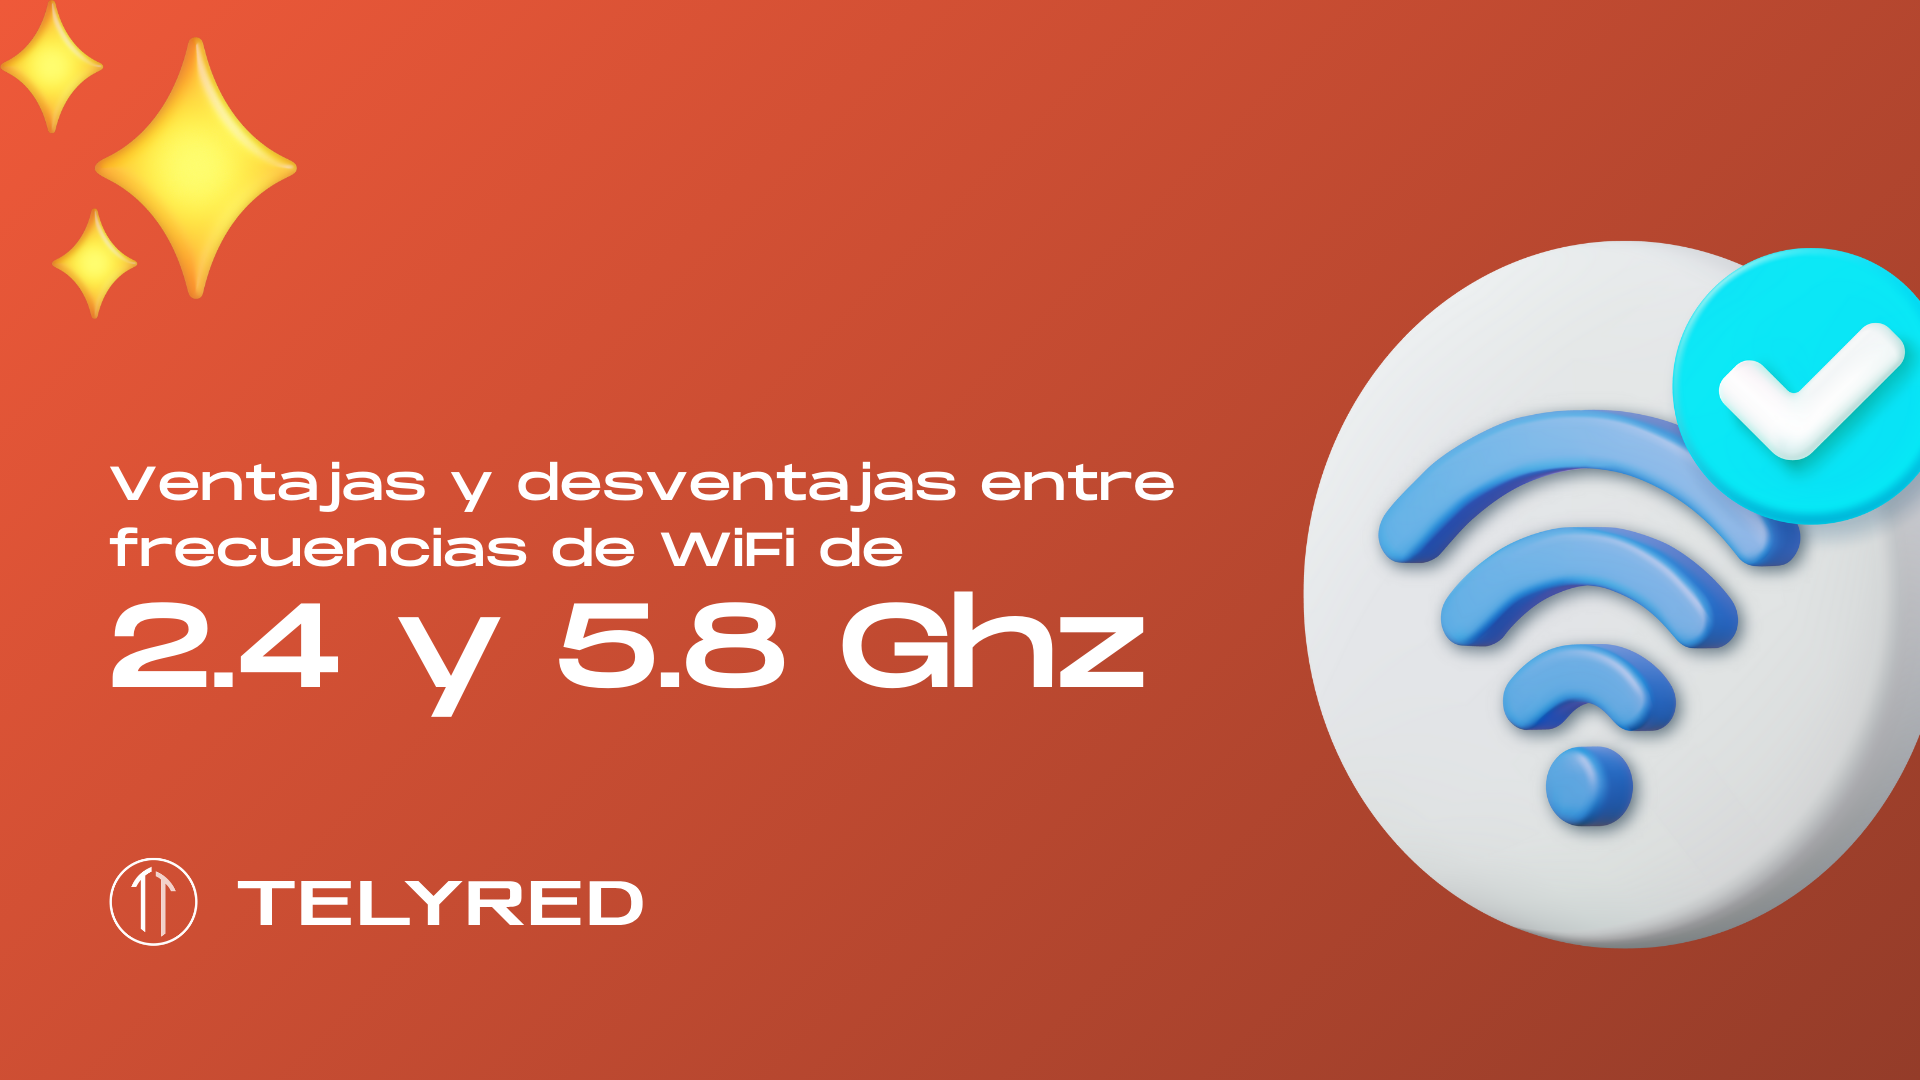 Ventajas y desventajas entre frecuencias de WiFi de 2.4 y 5.8 Ghz ðŸ‘€